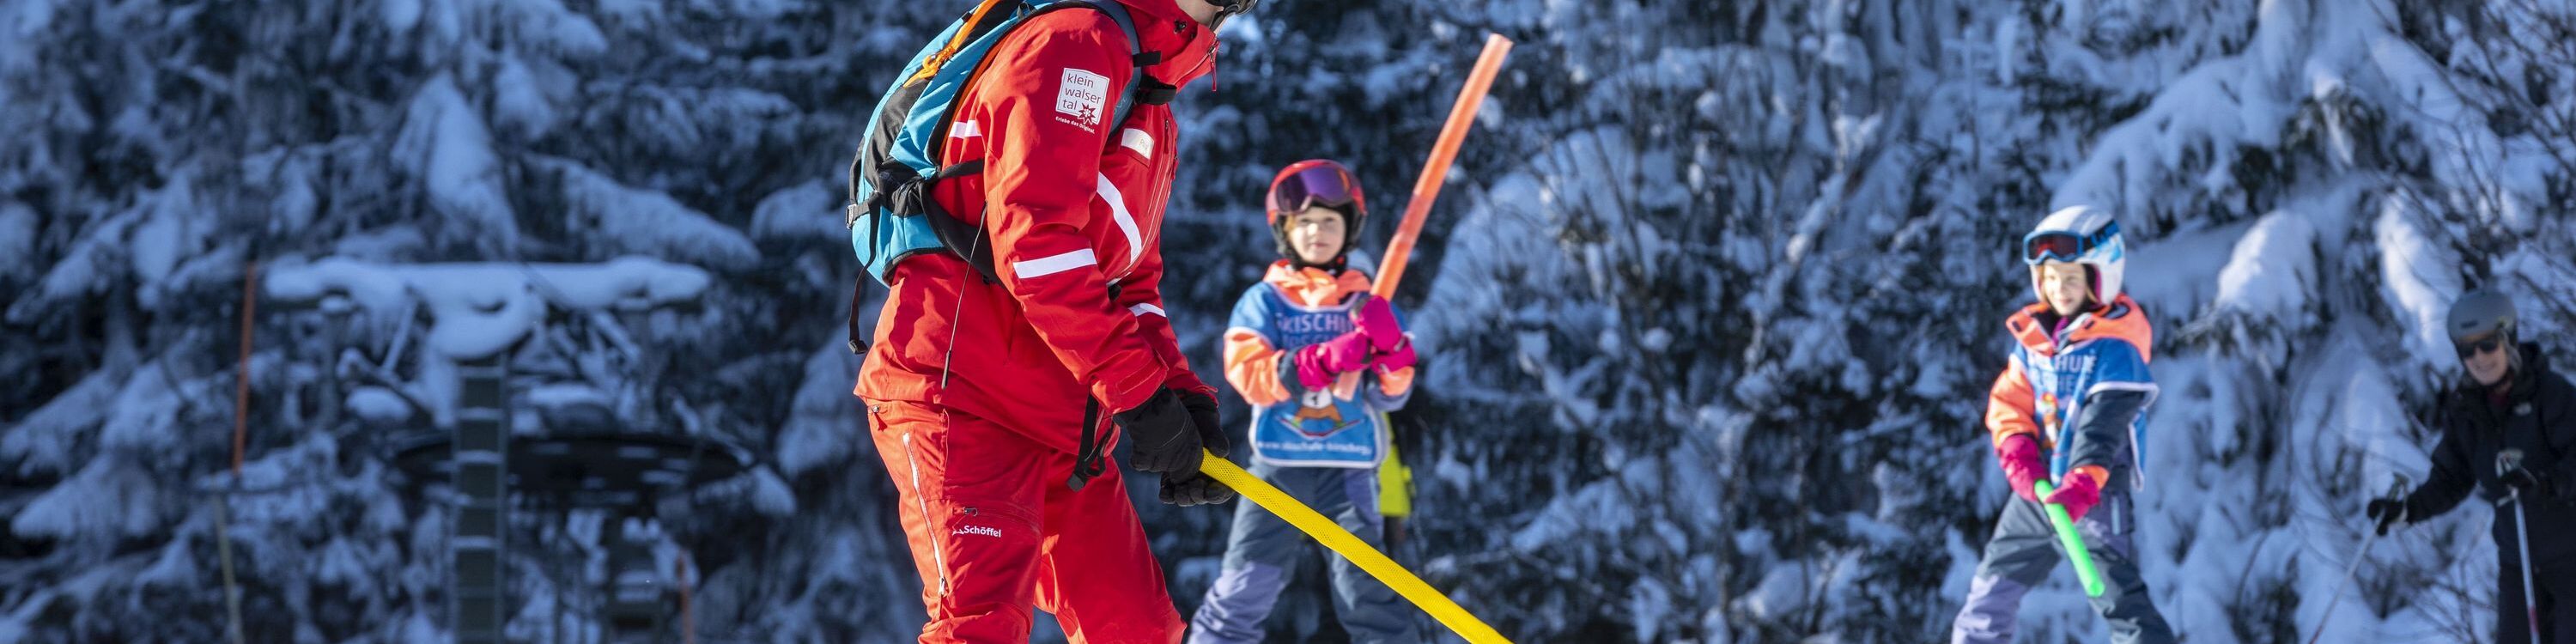 Skikurs für Kinder mit Skilehrerin der Skischule Hirschegg